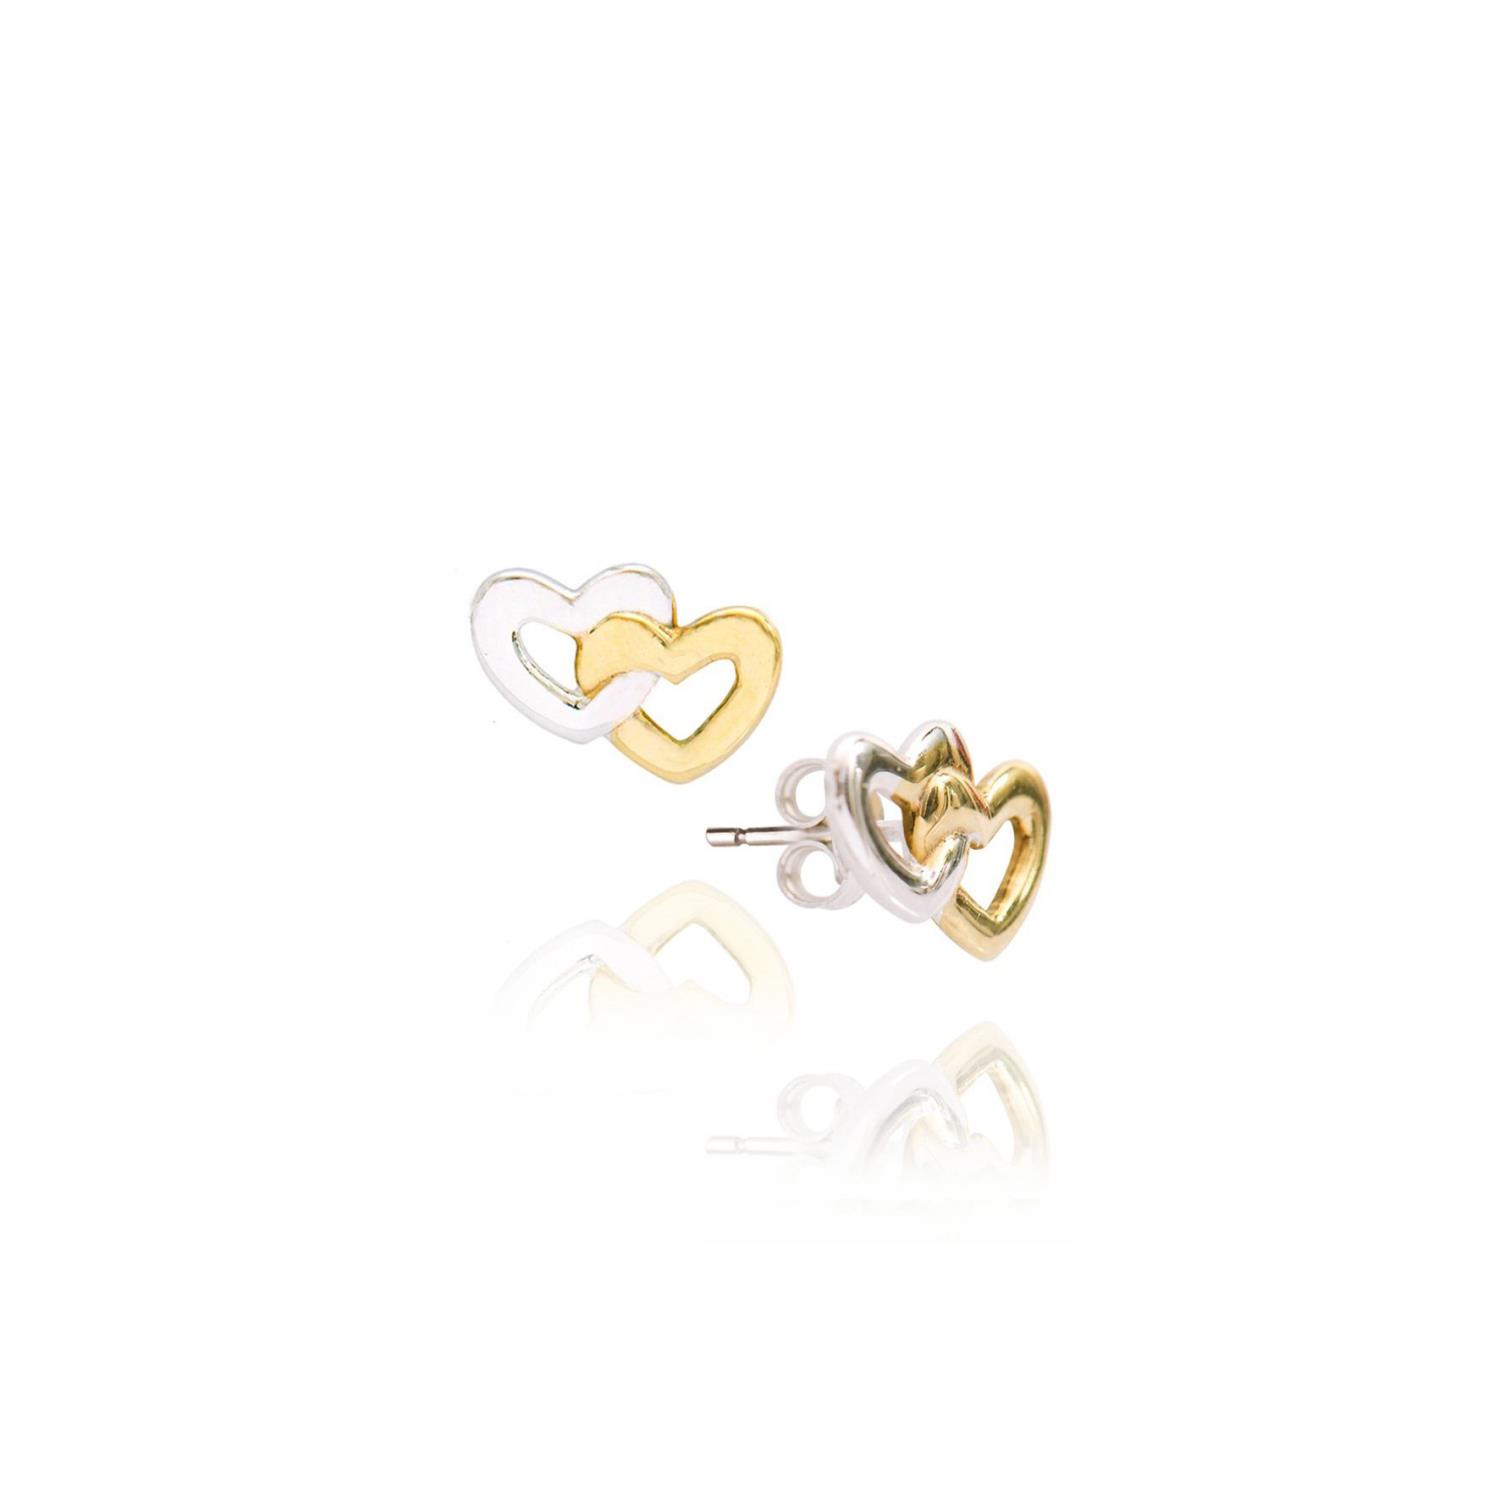 Orecchini in Oro Bianco e Giallo Simbolo Cuore Ref. 753044 - FACCO